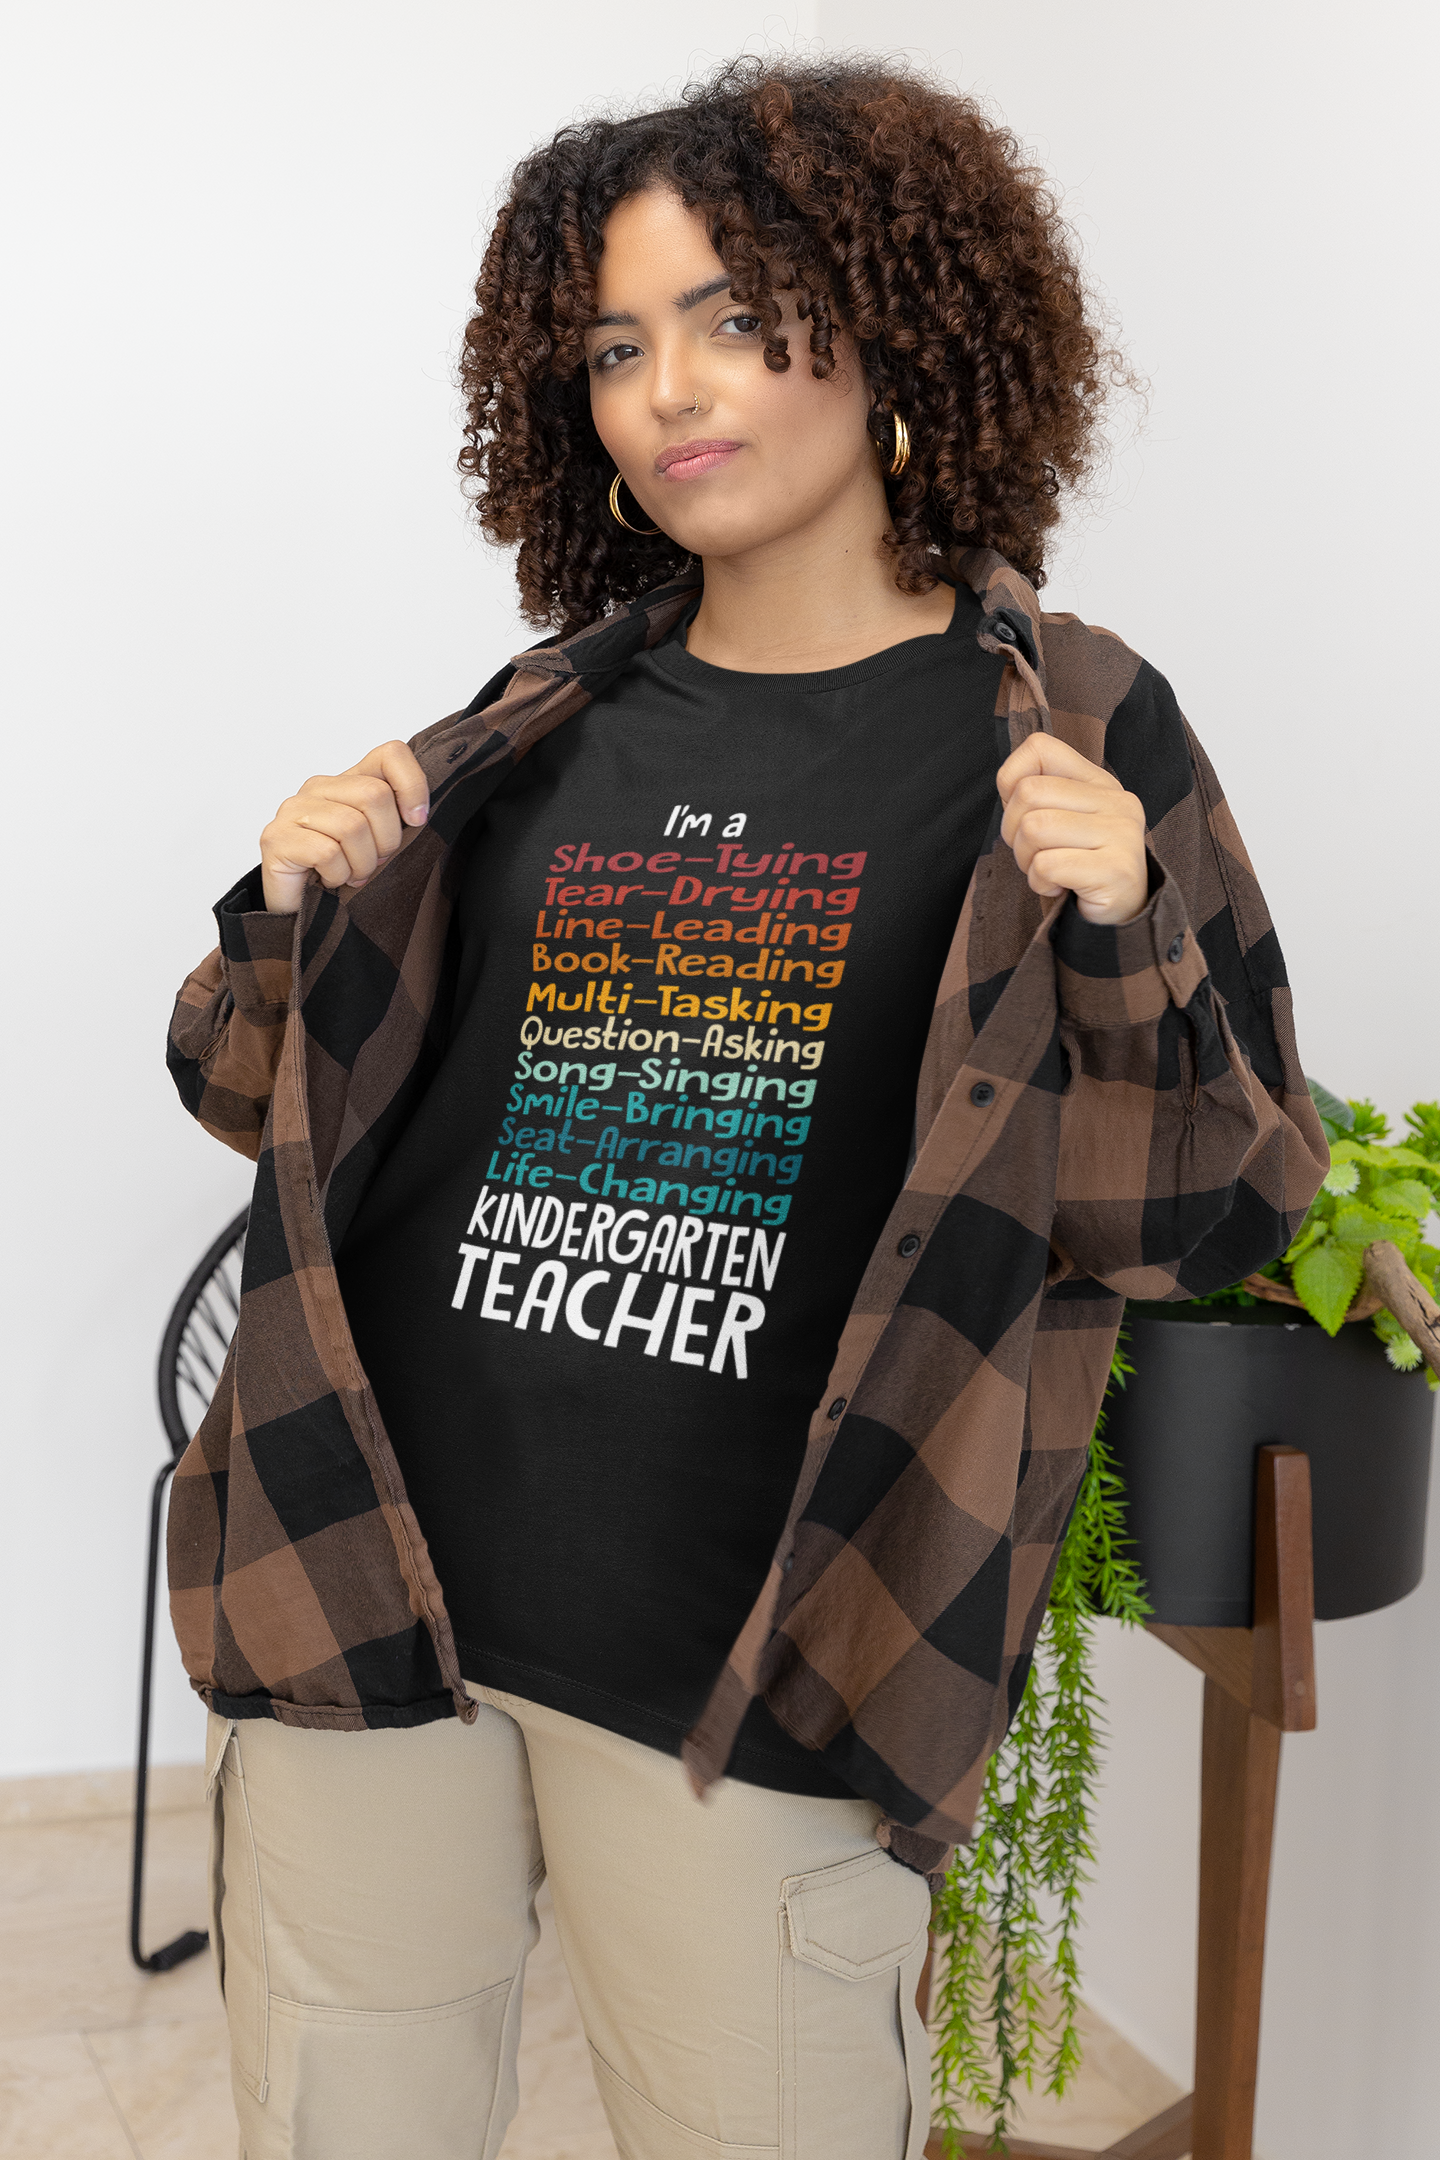 Life of a Kindergarten Teacher" In Color Tee!